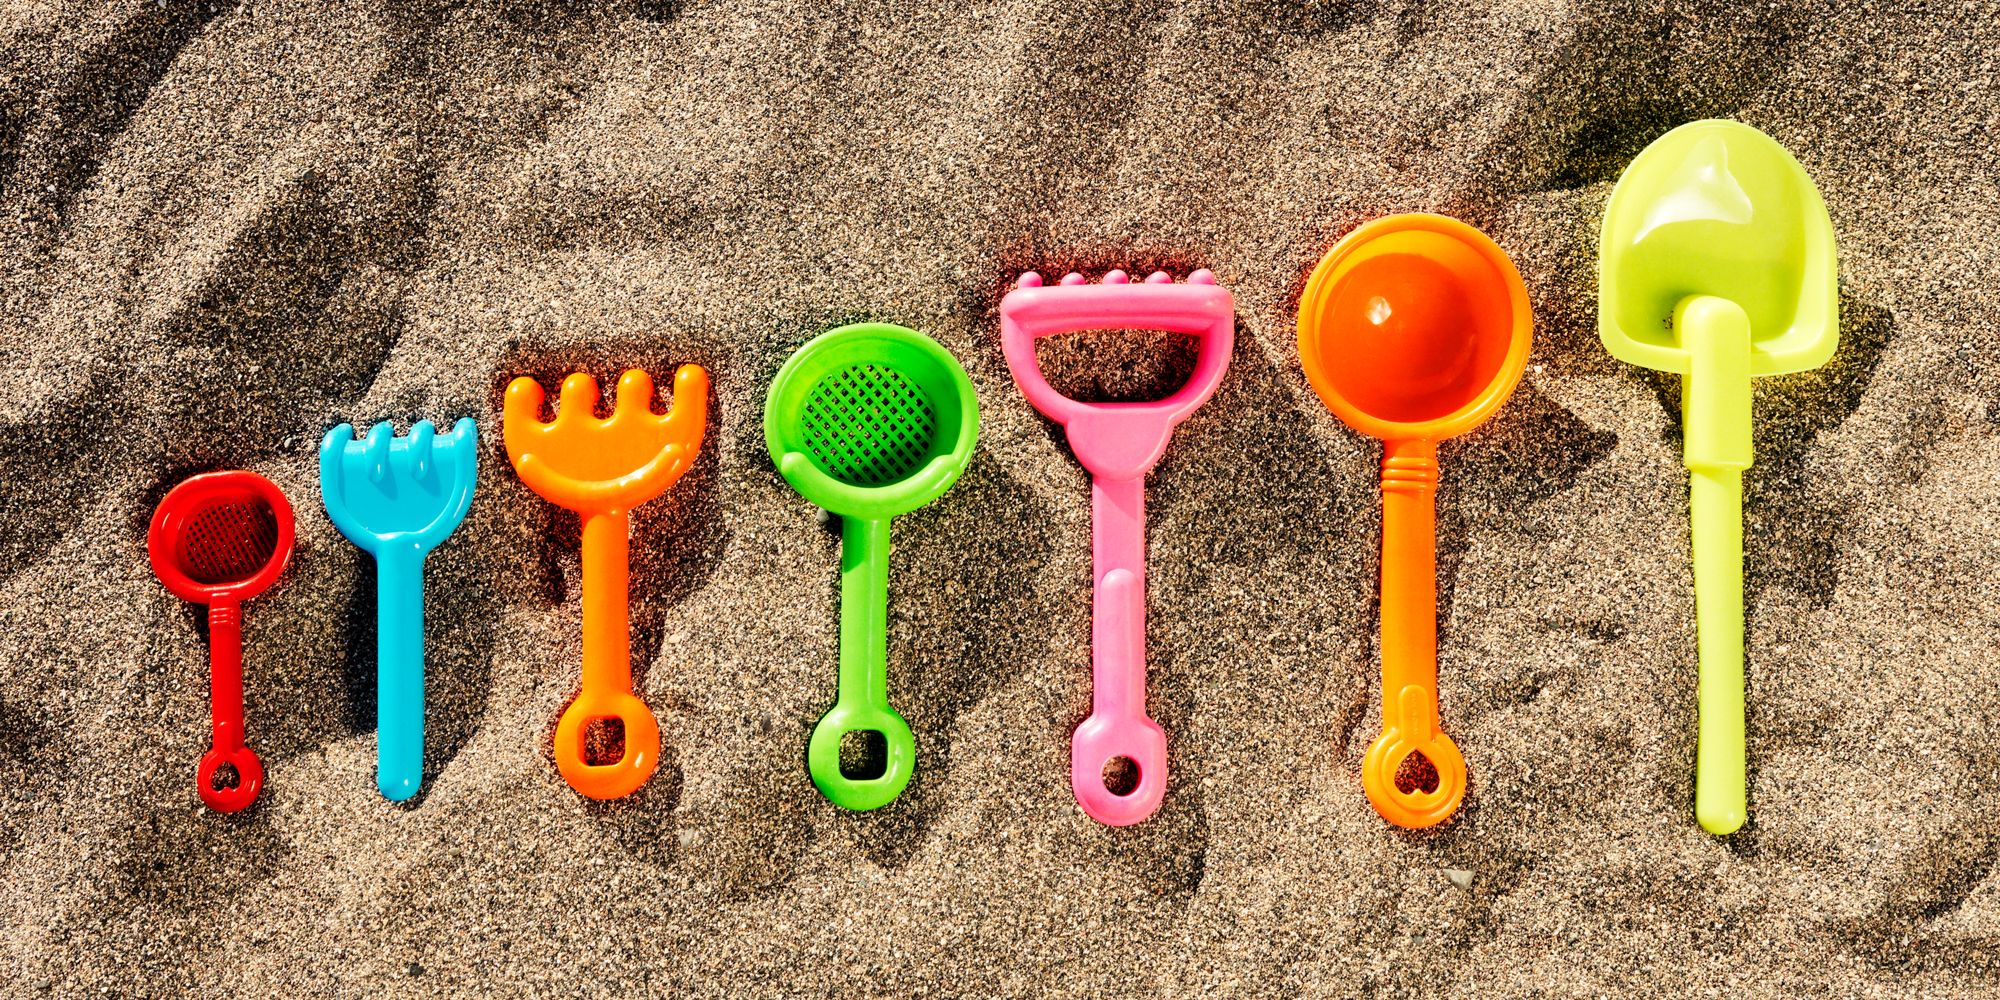 15 Best Sand Toys & Beach Toys for Summer 2022 - Kids Beach Toys